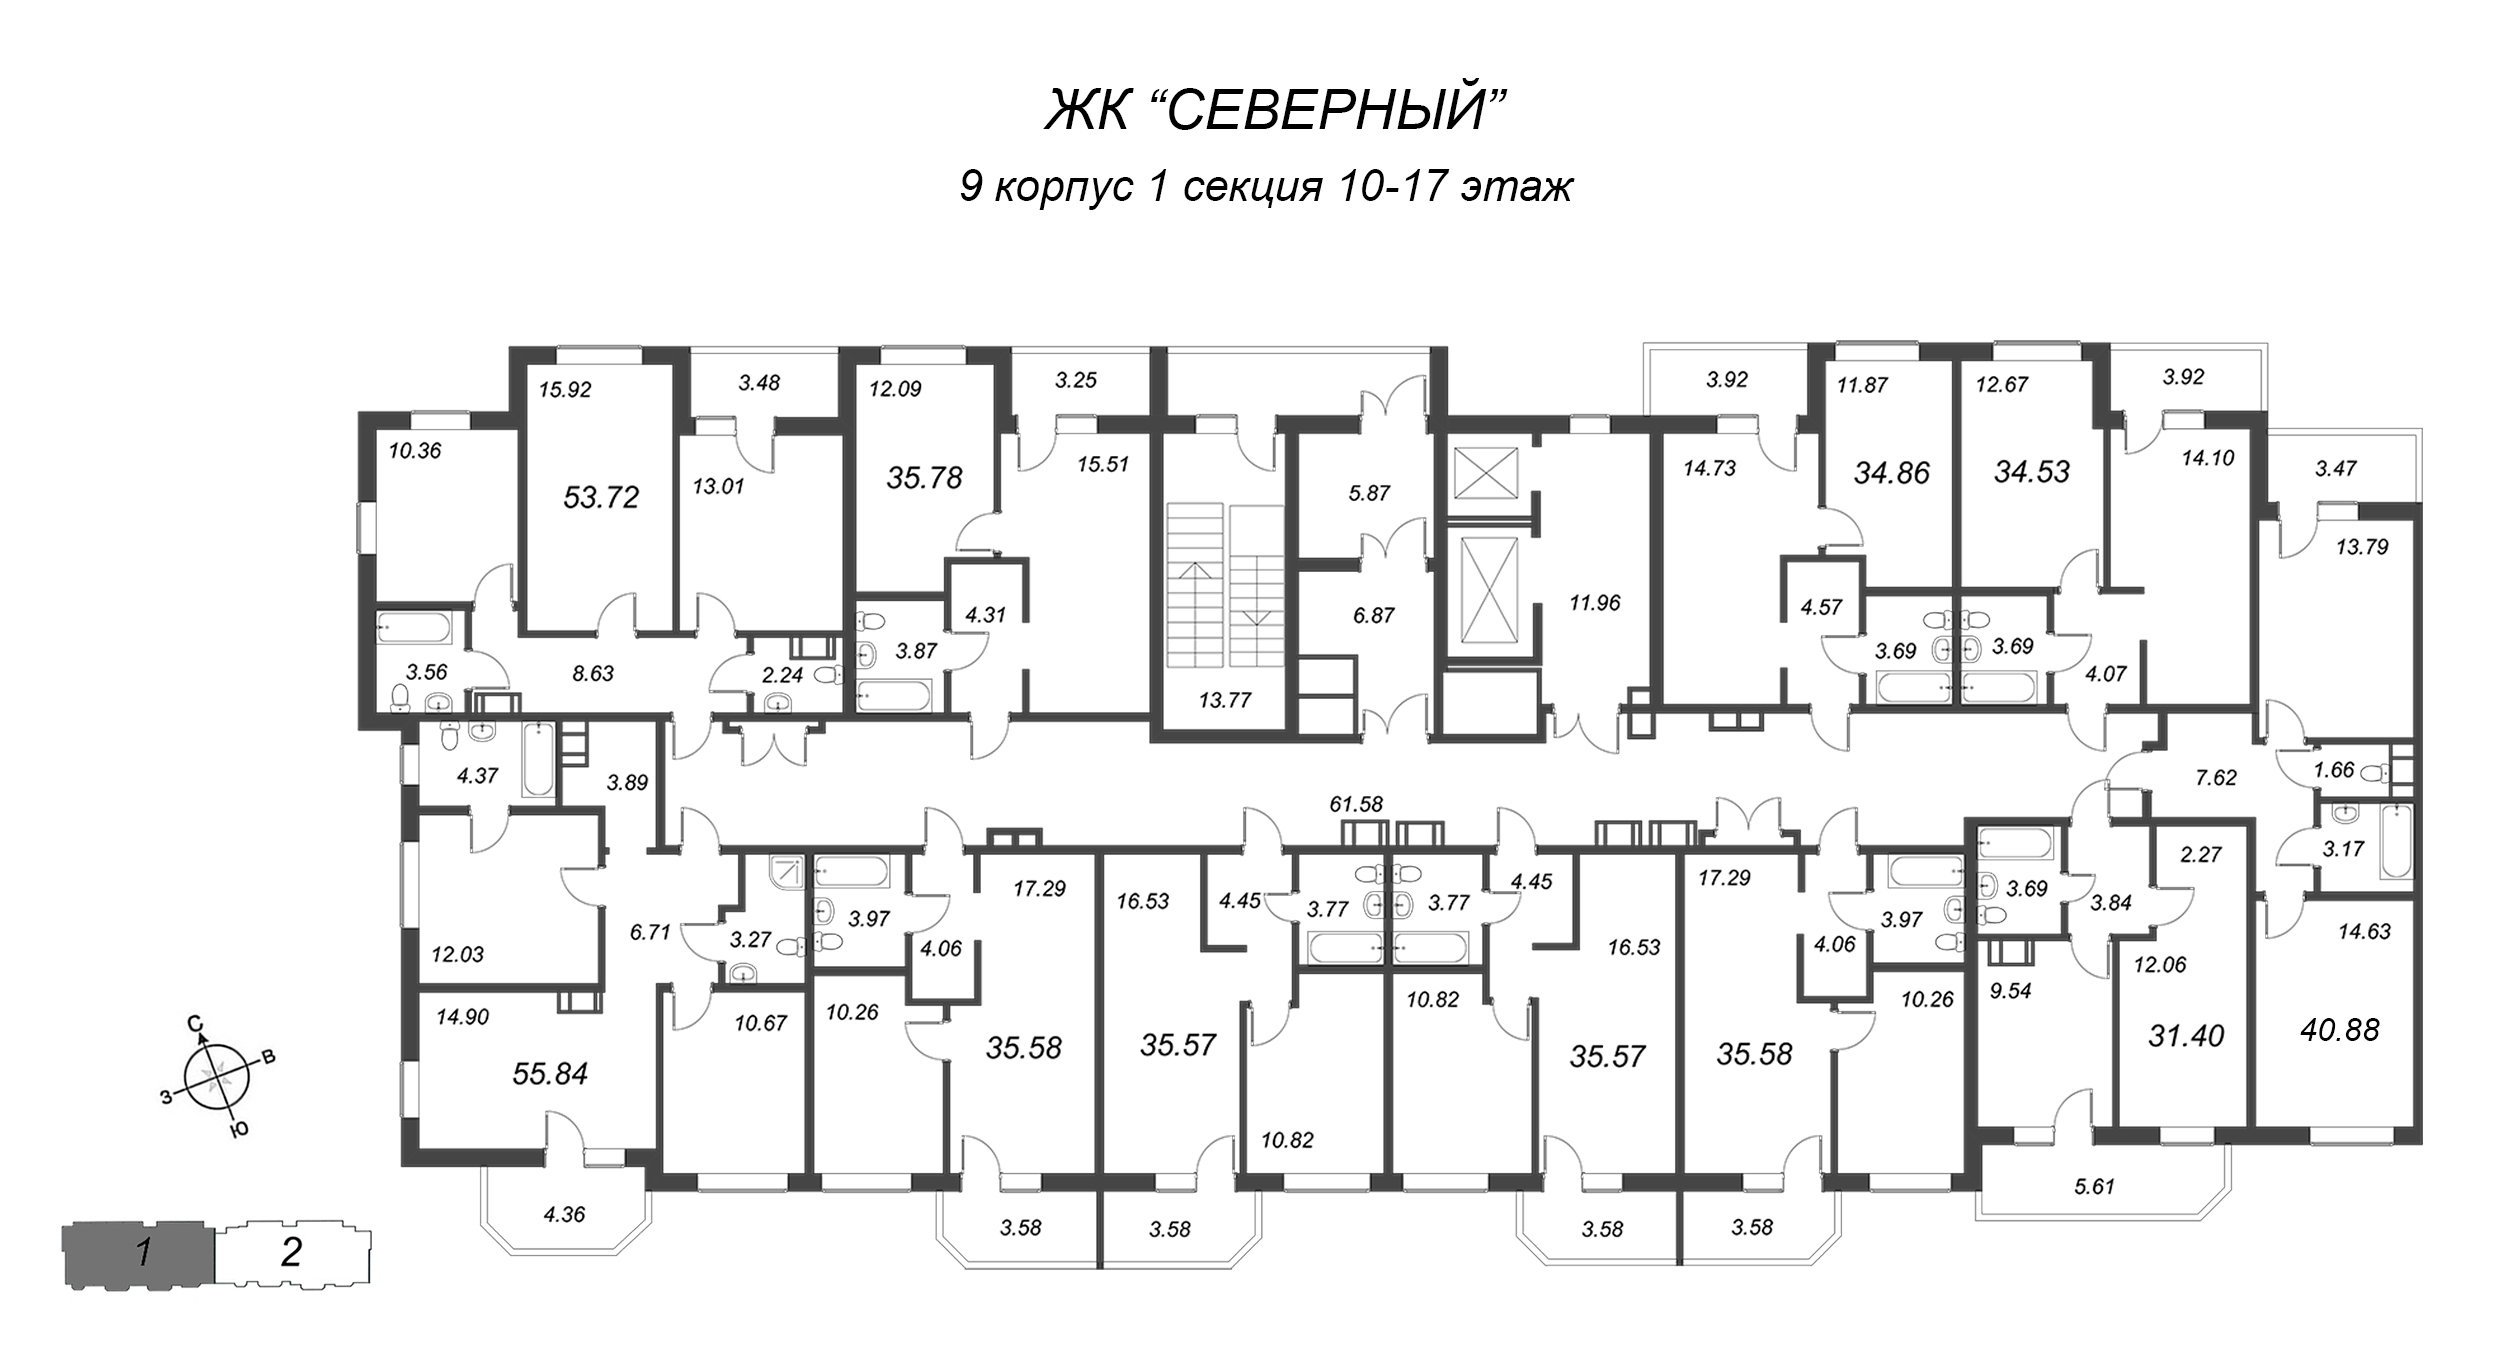 2-комнатная (Евро) квартира, 35.78 м² в ЖК "Северный" - планировка этажа